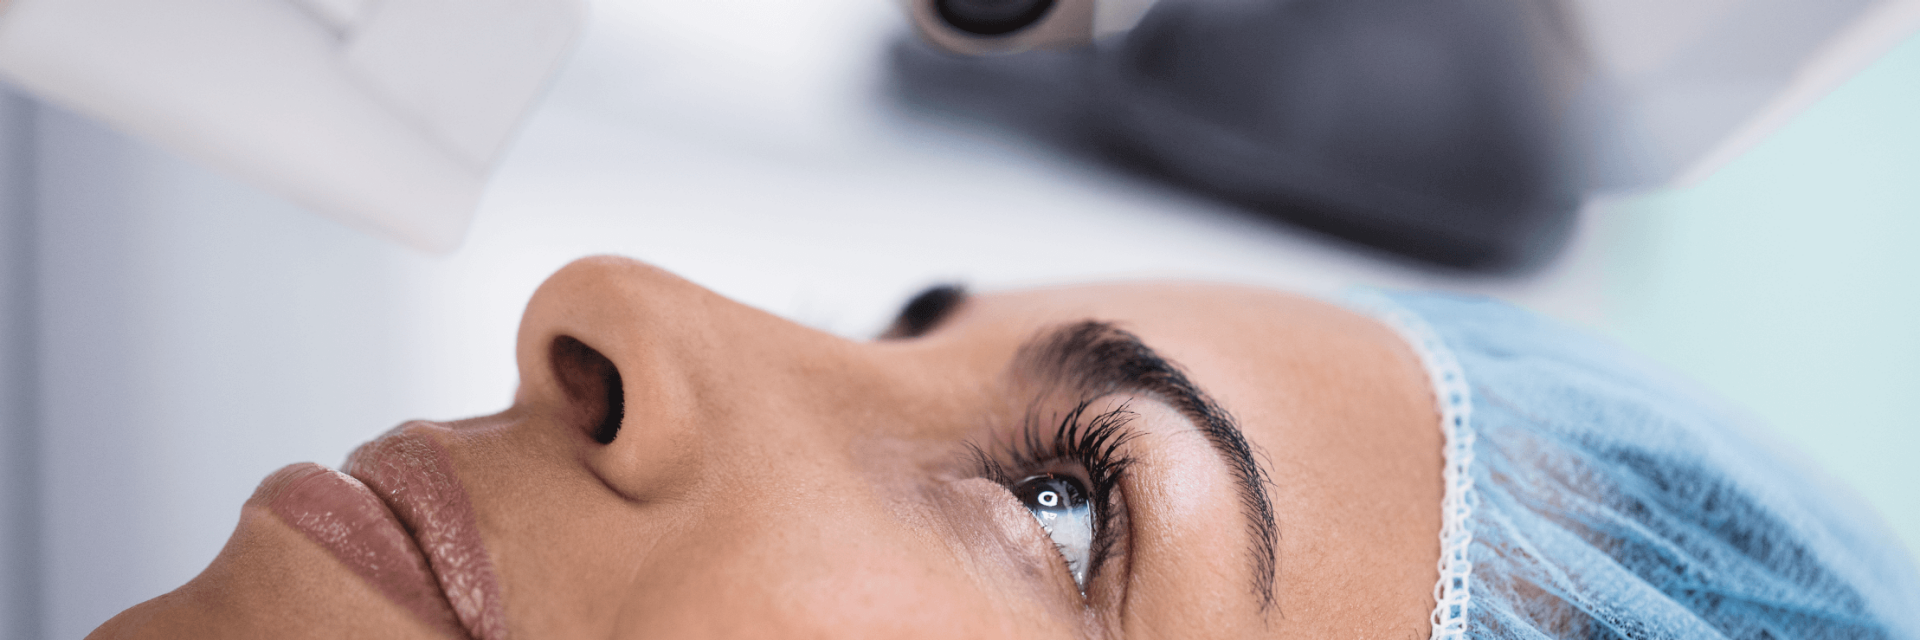 Cirurgia ocular a laser